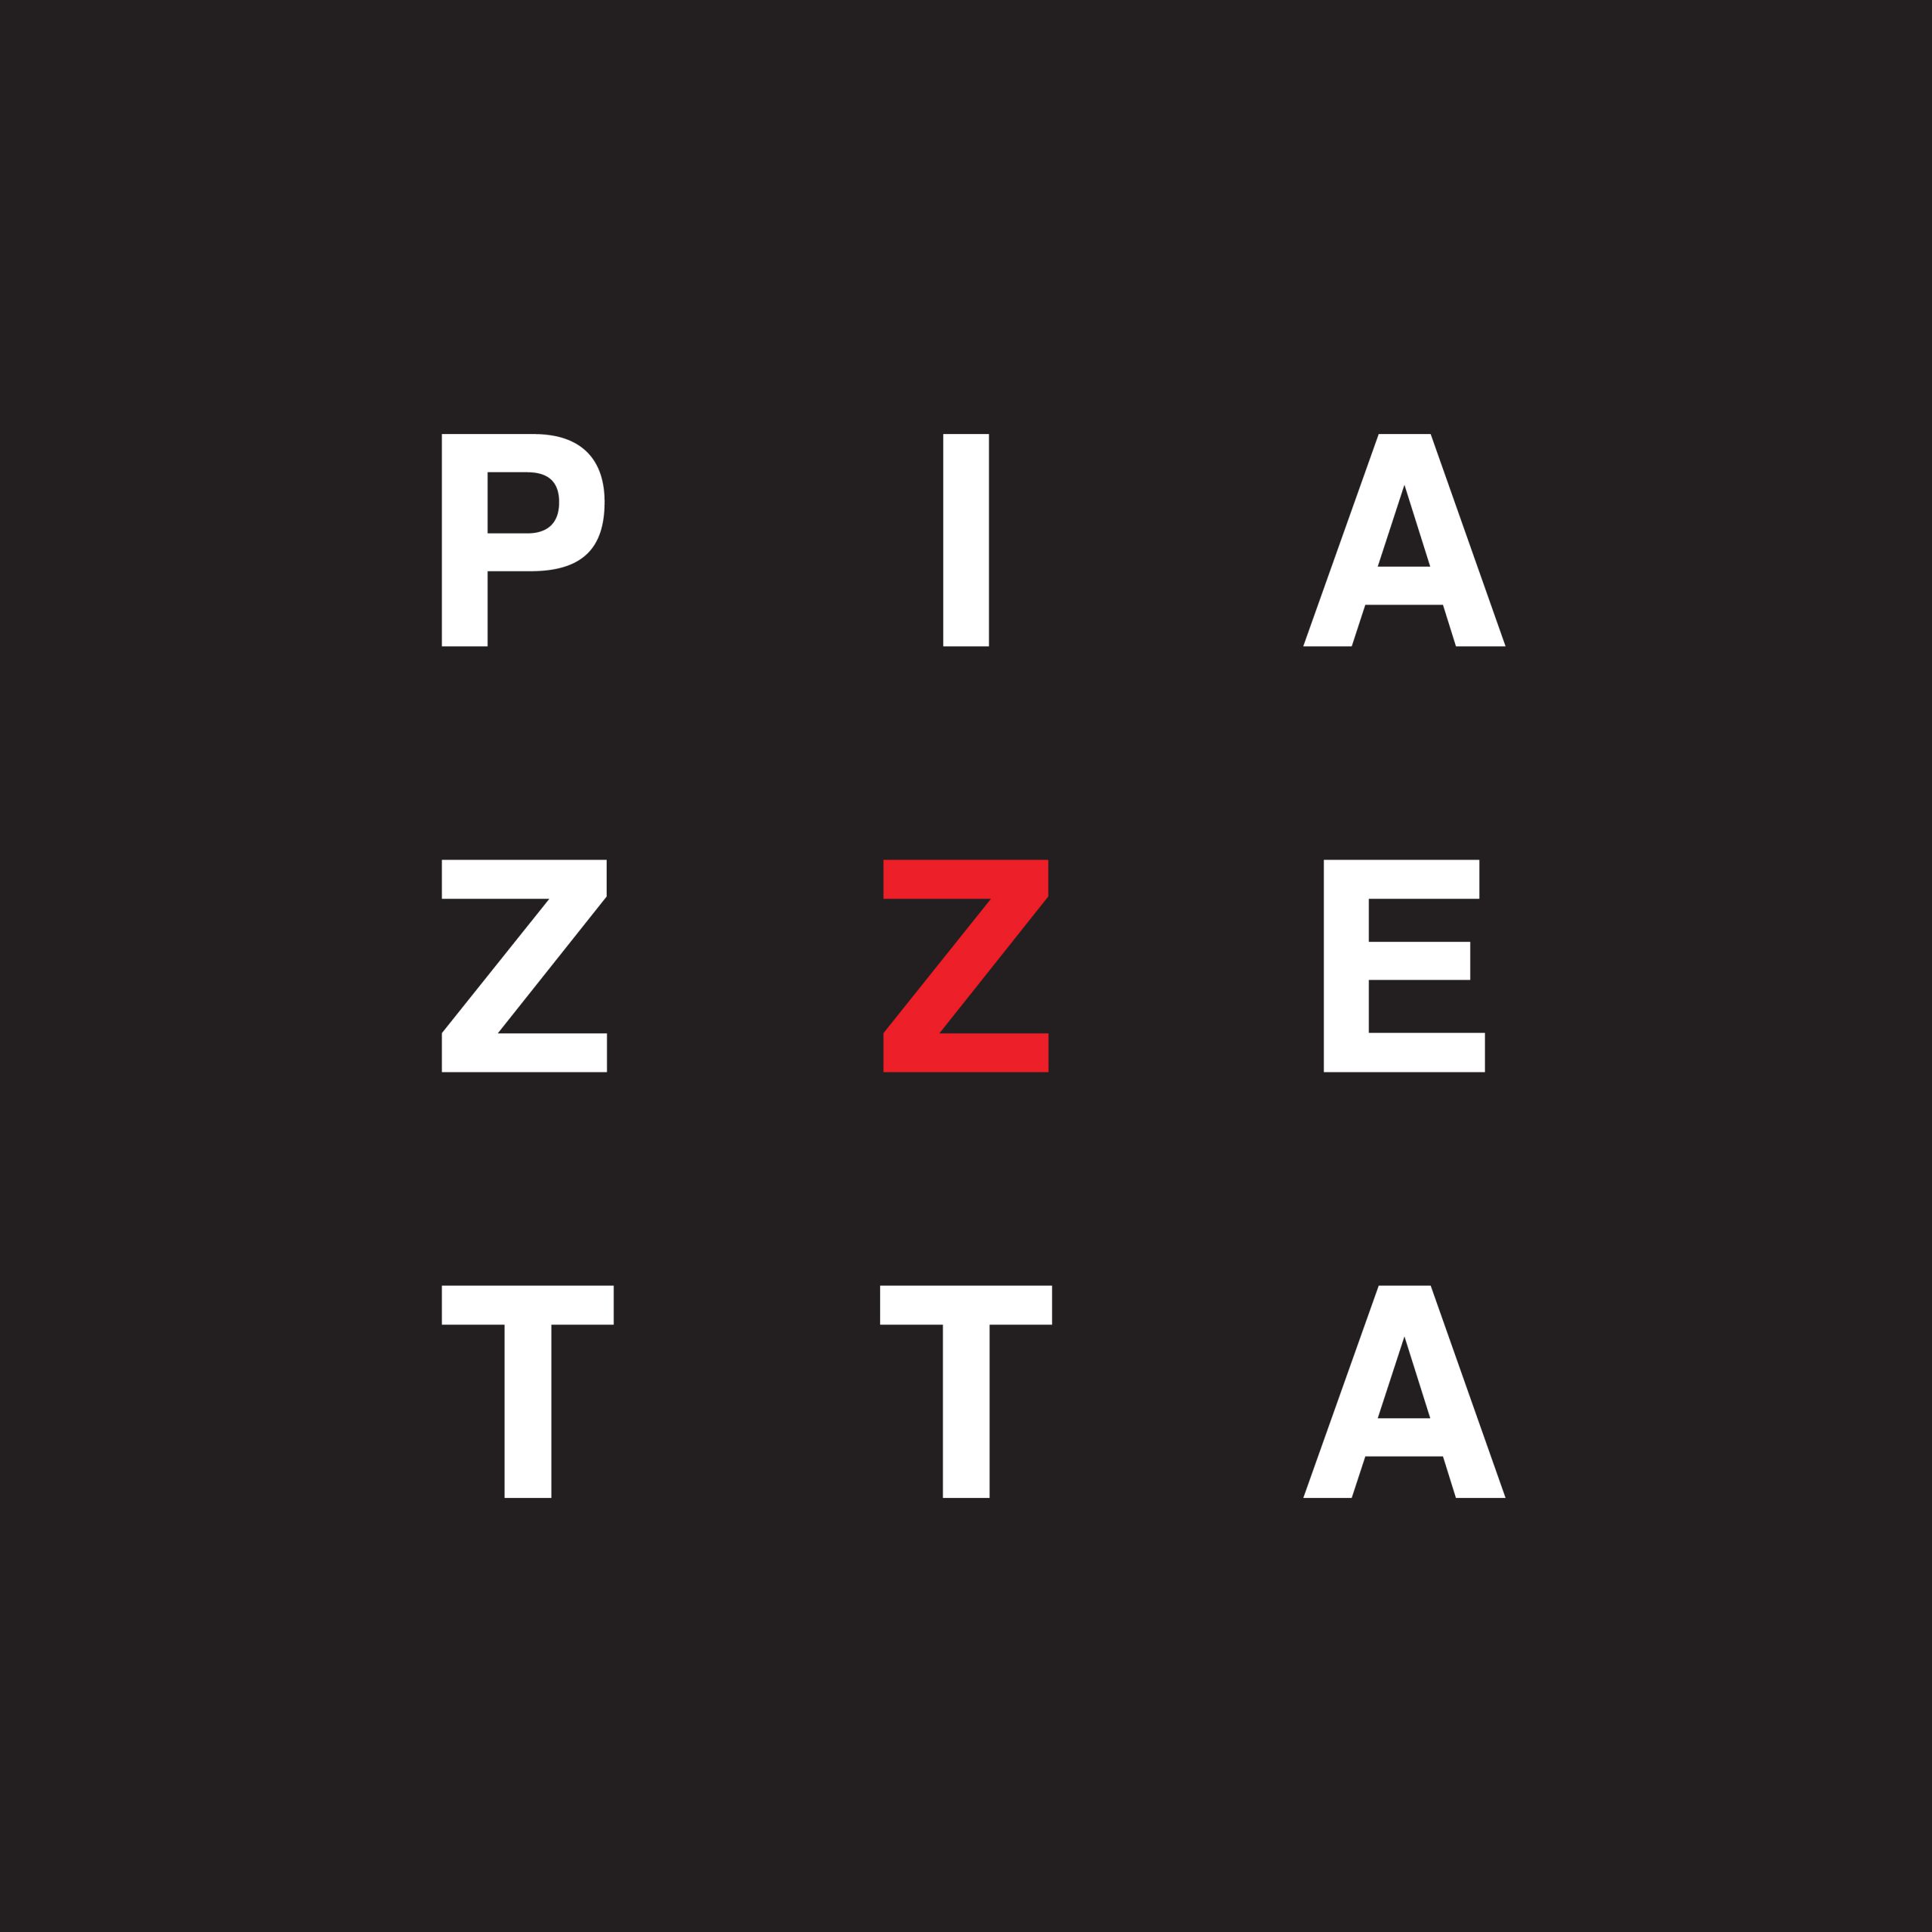 La Piazzetta